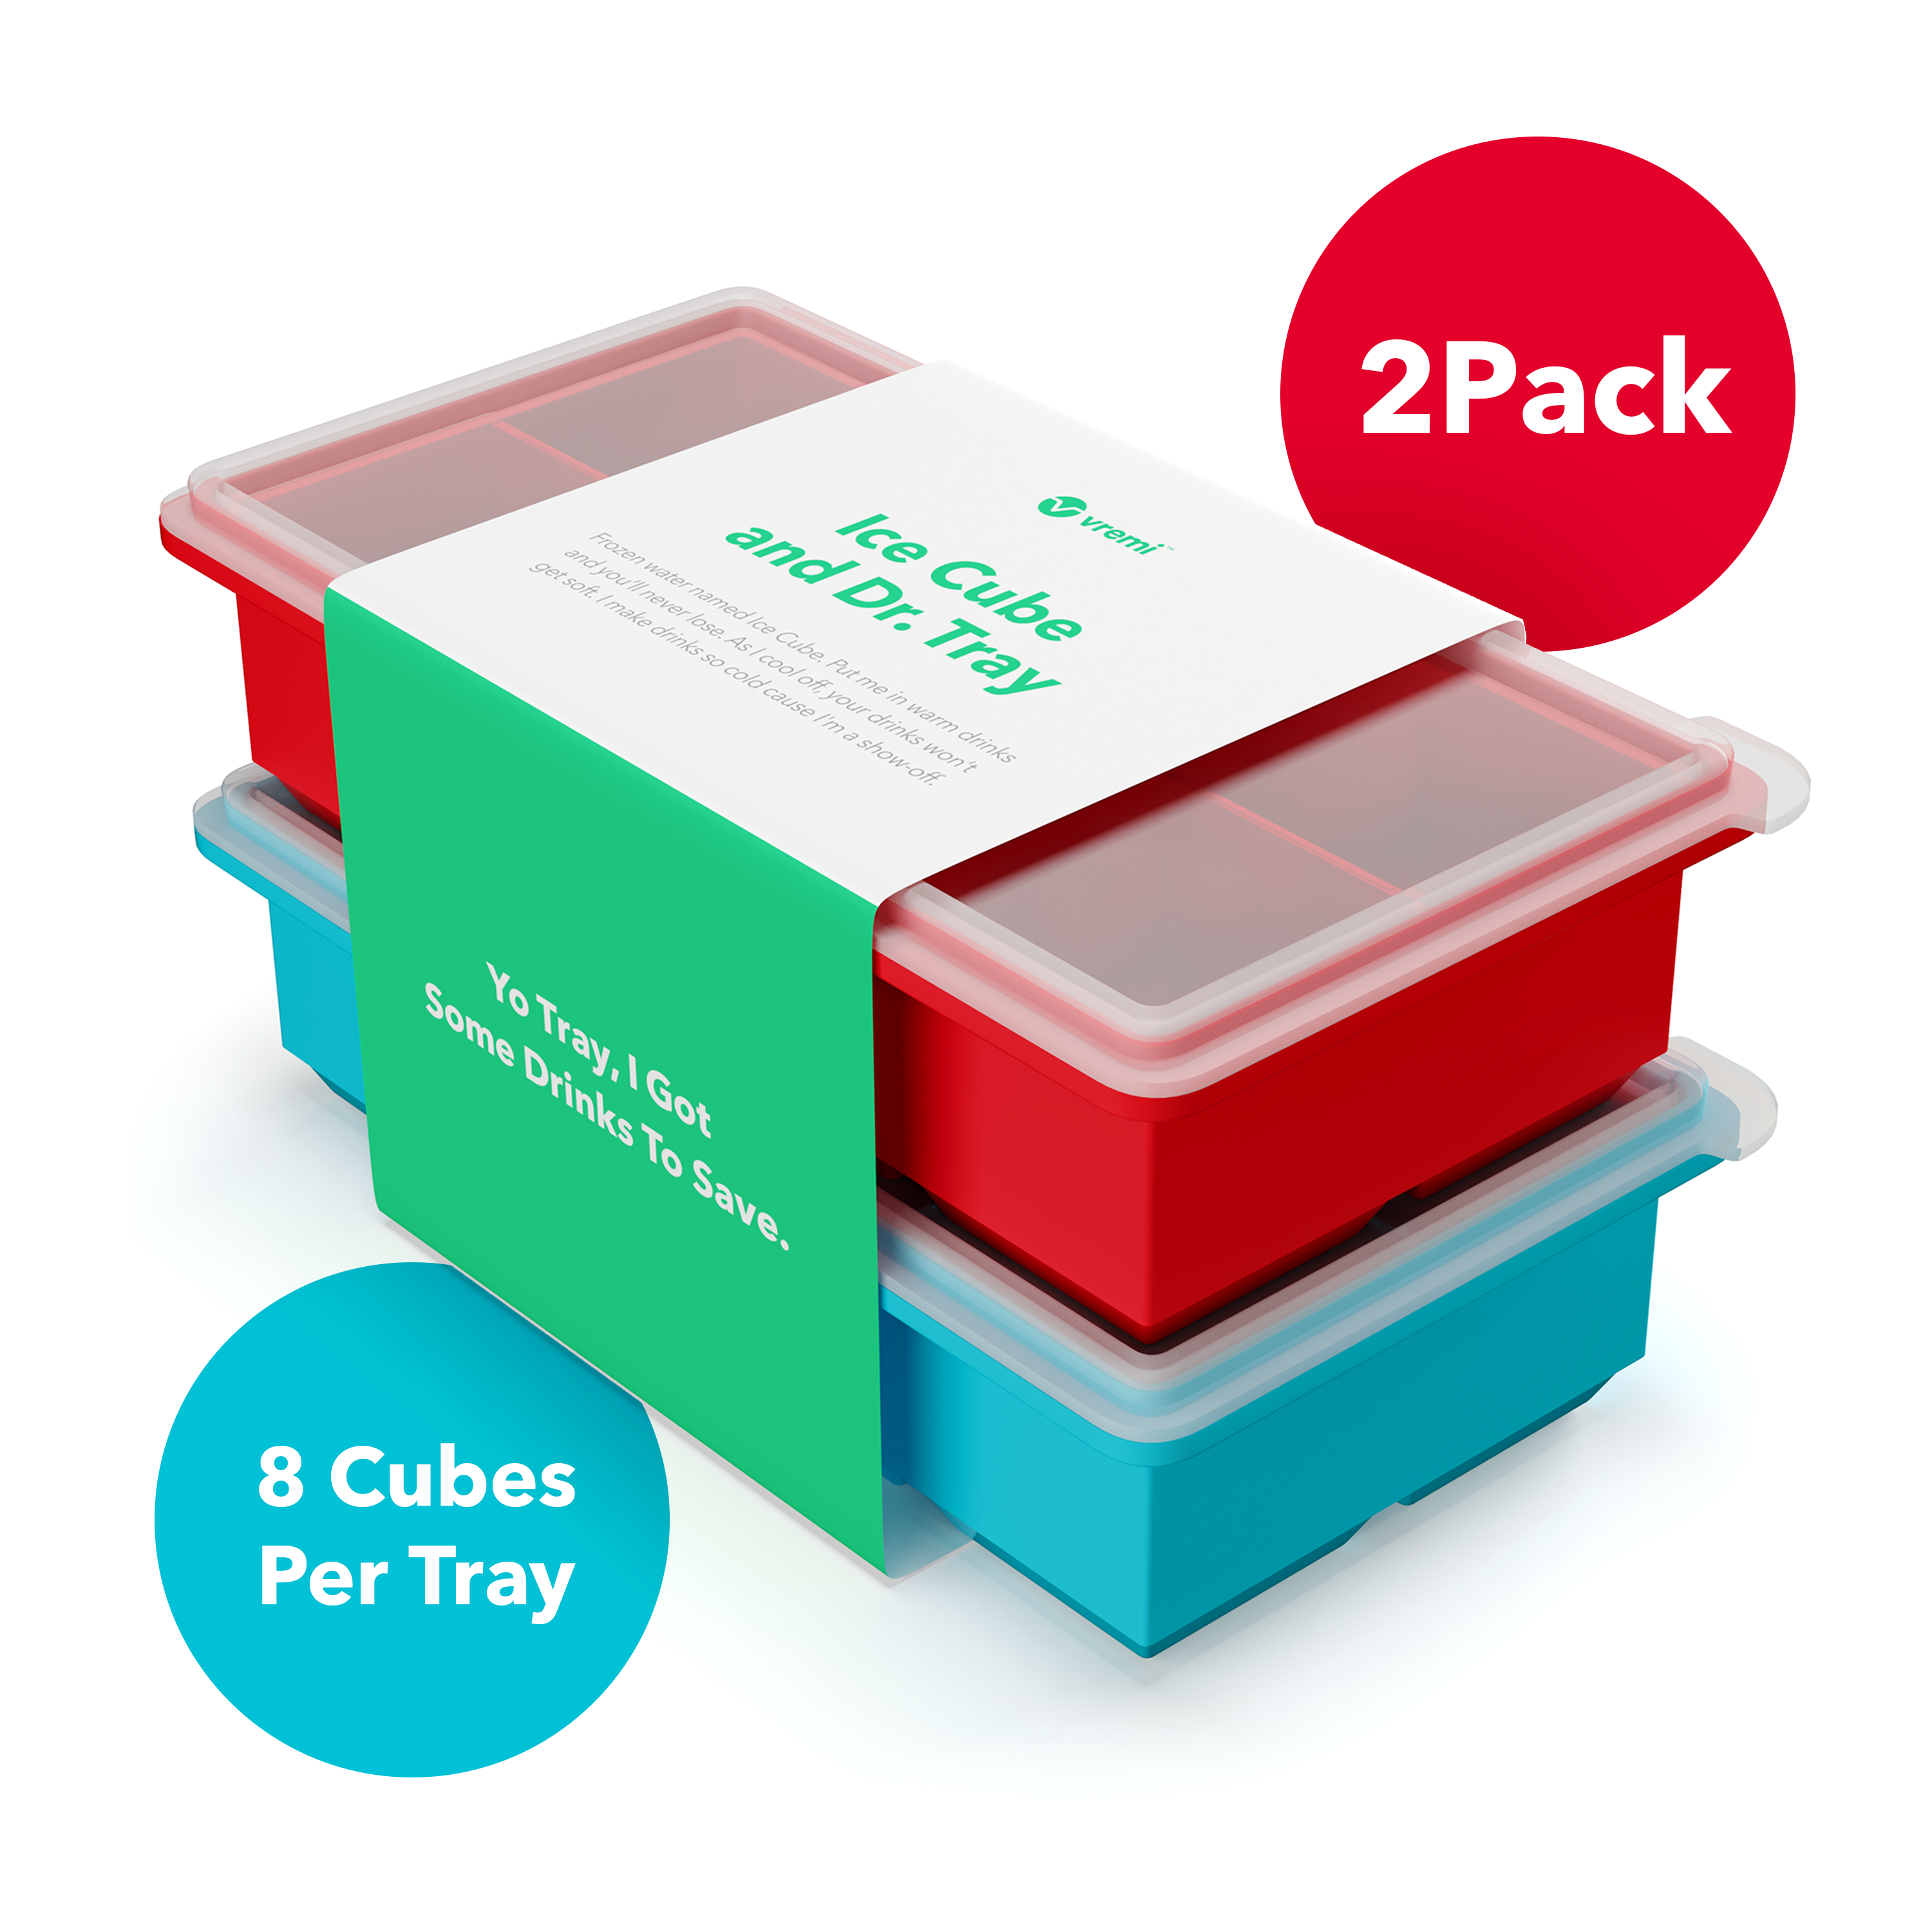 KIYOKI Ice Cube Trays for Freezer 3 Pack - Mini Ice Cube Trays